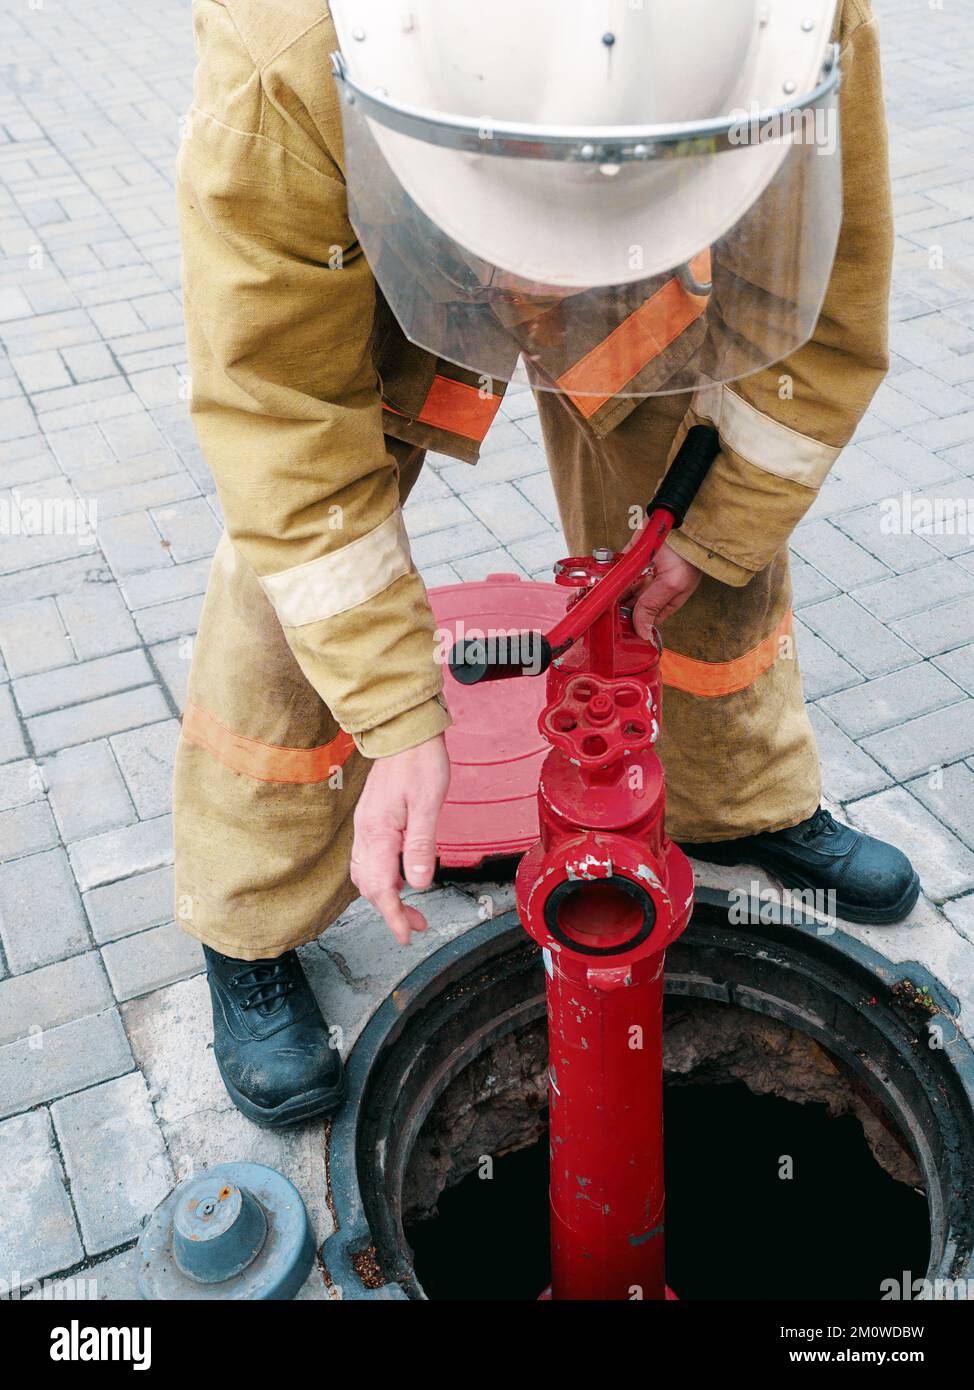 Un pompier ou un secouriste installe une borne incendie dans un puits ouvert. Travail de pompier en cas d'incendie. La formation et la pratique des actions en cas d'incendie. Arrière-plan... Banque D'Images